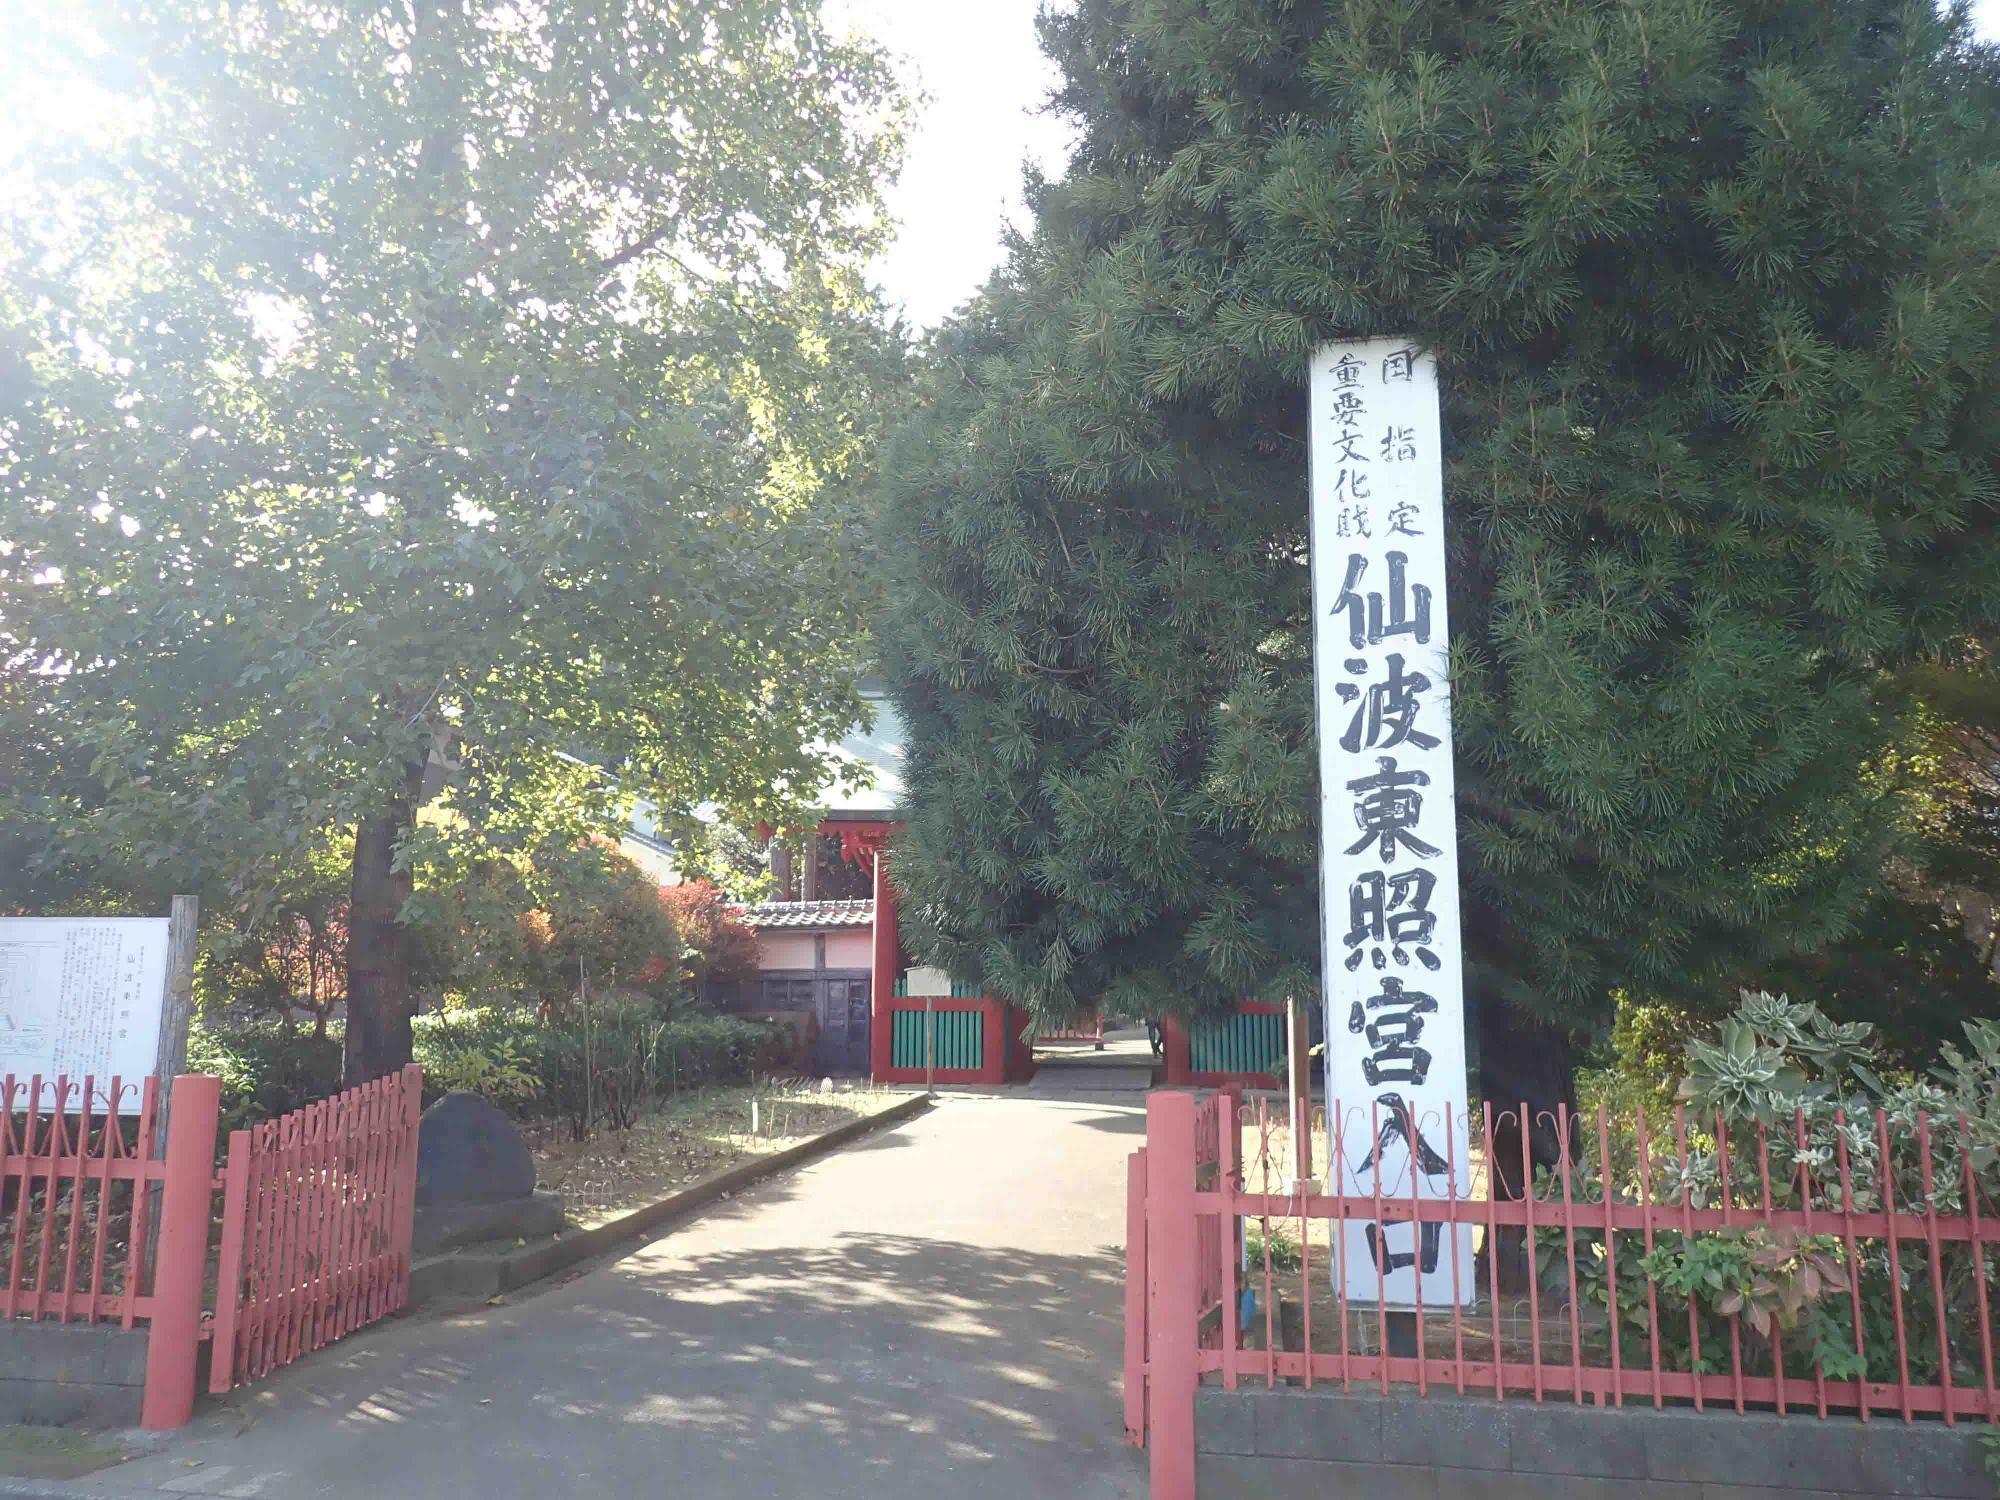 仙波東照宮は喜多院に隣接しています